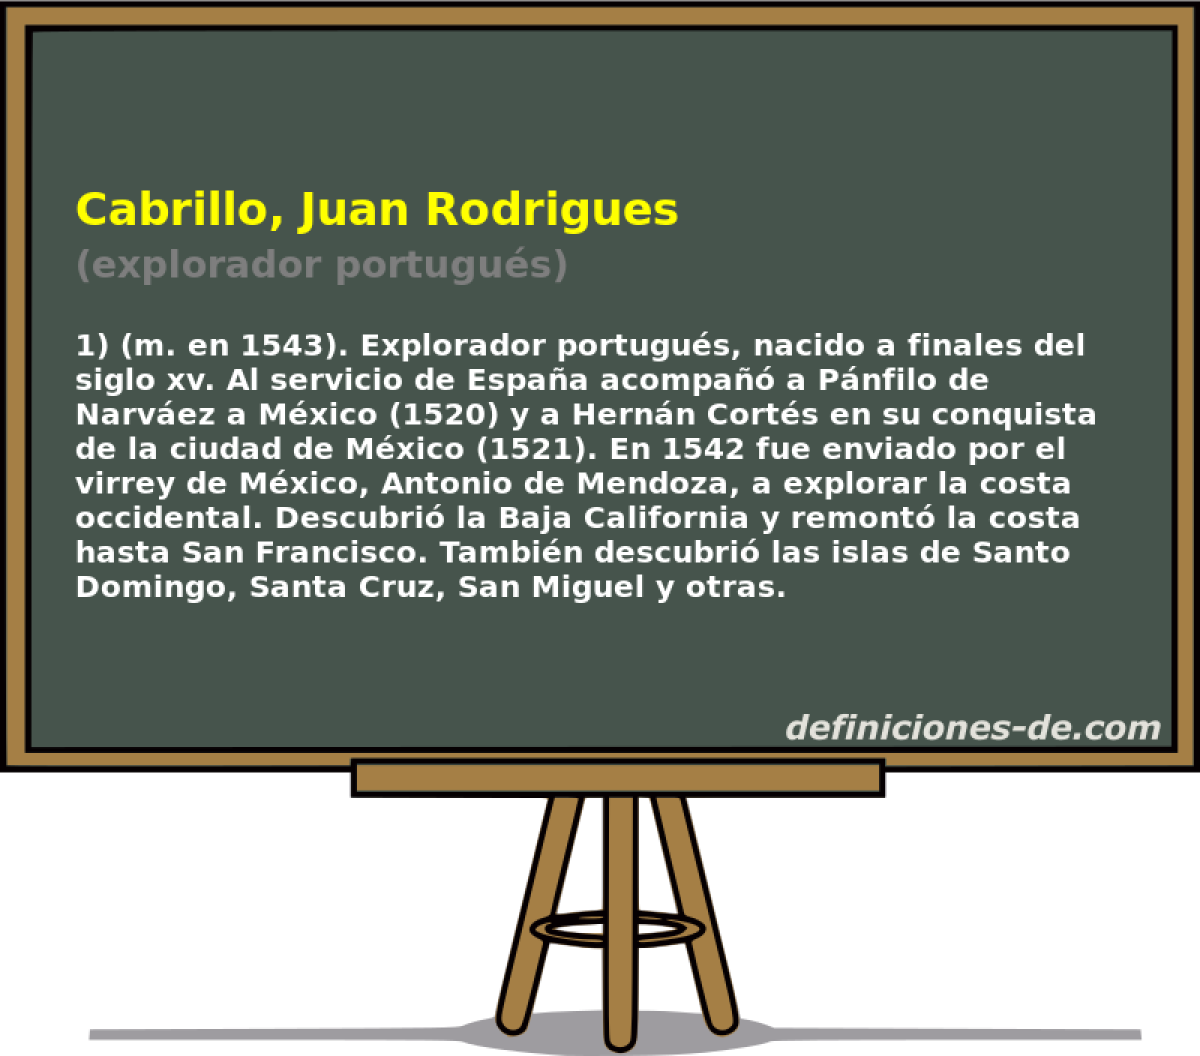 Cabrillo, Juan Rodrigues (explorador portugus)